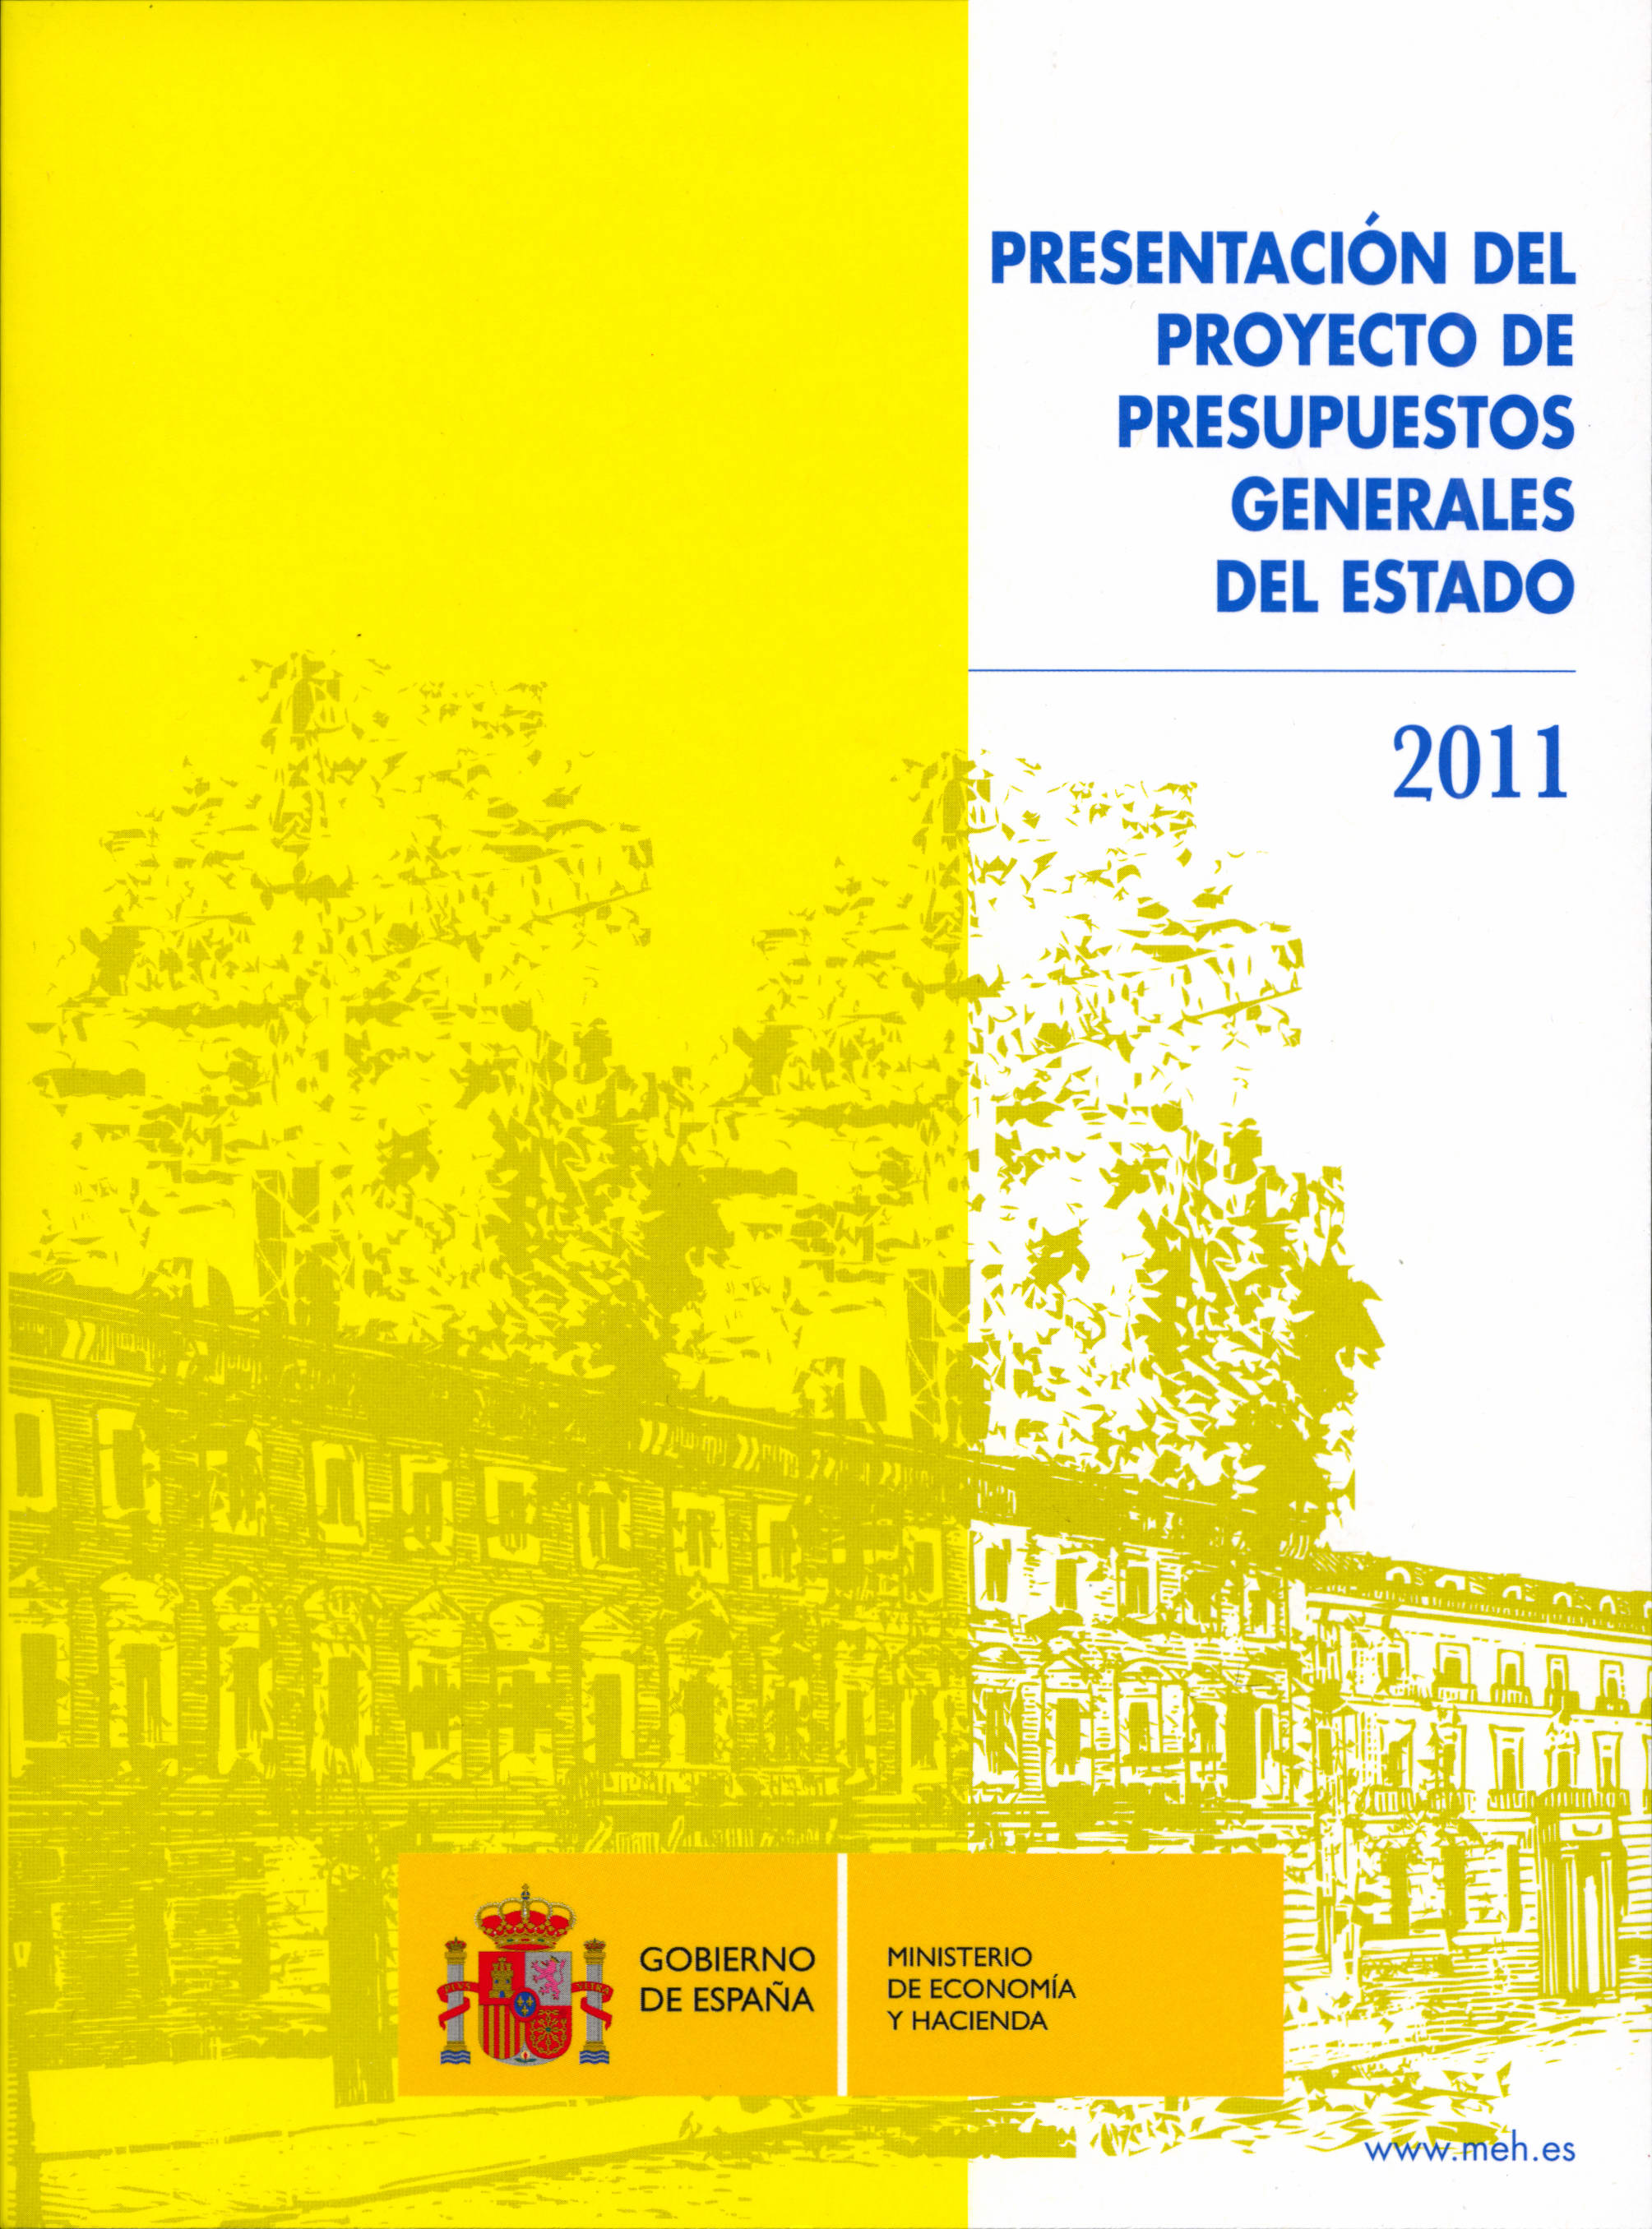 Portada del libro: PRESENTACIÓN DEL PROYECTO DE PRESUPUESTOS GENERALES DEL ESTADO 2011. libro-e